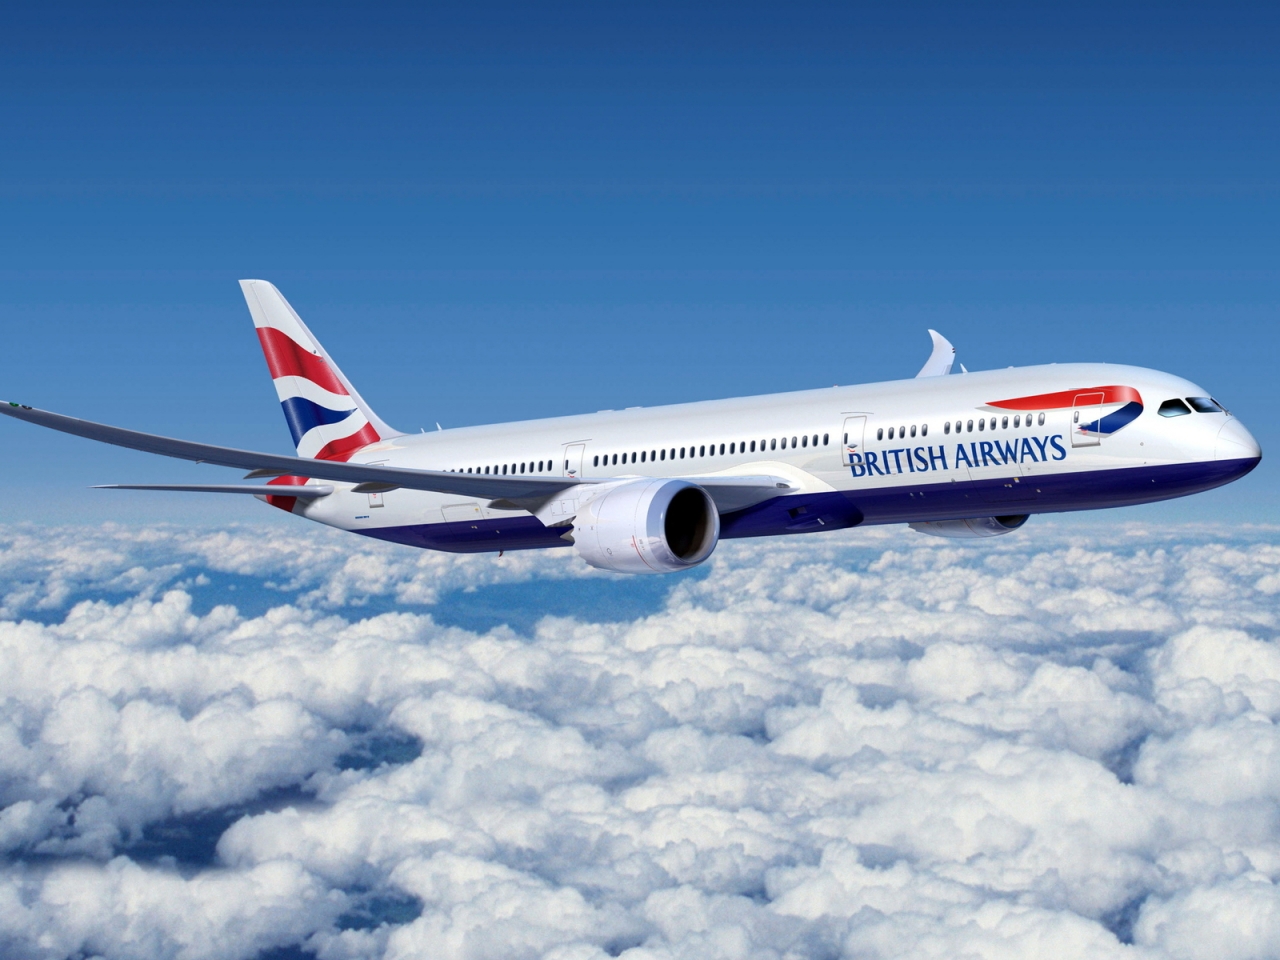 British Airways for 1280 x 960 resolution